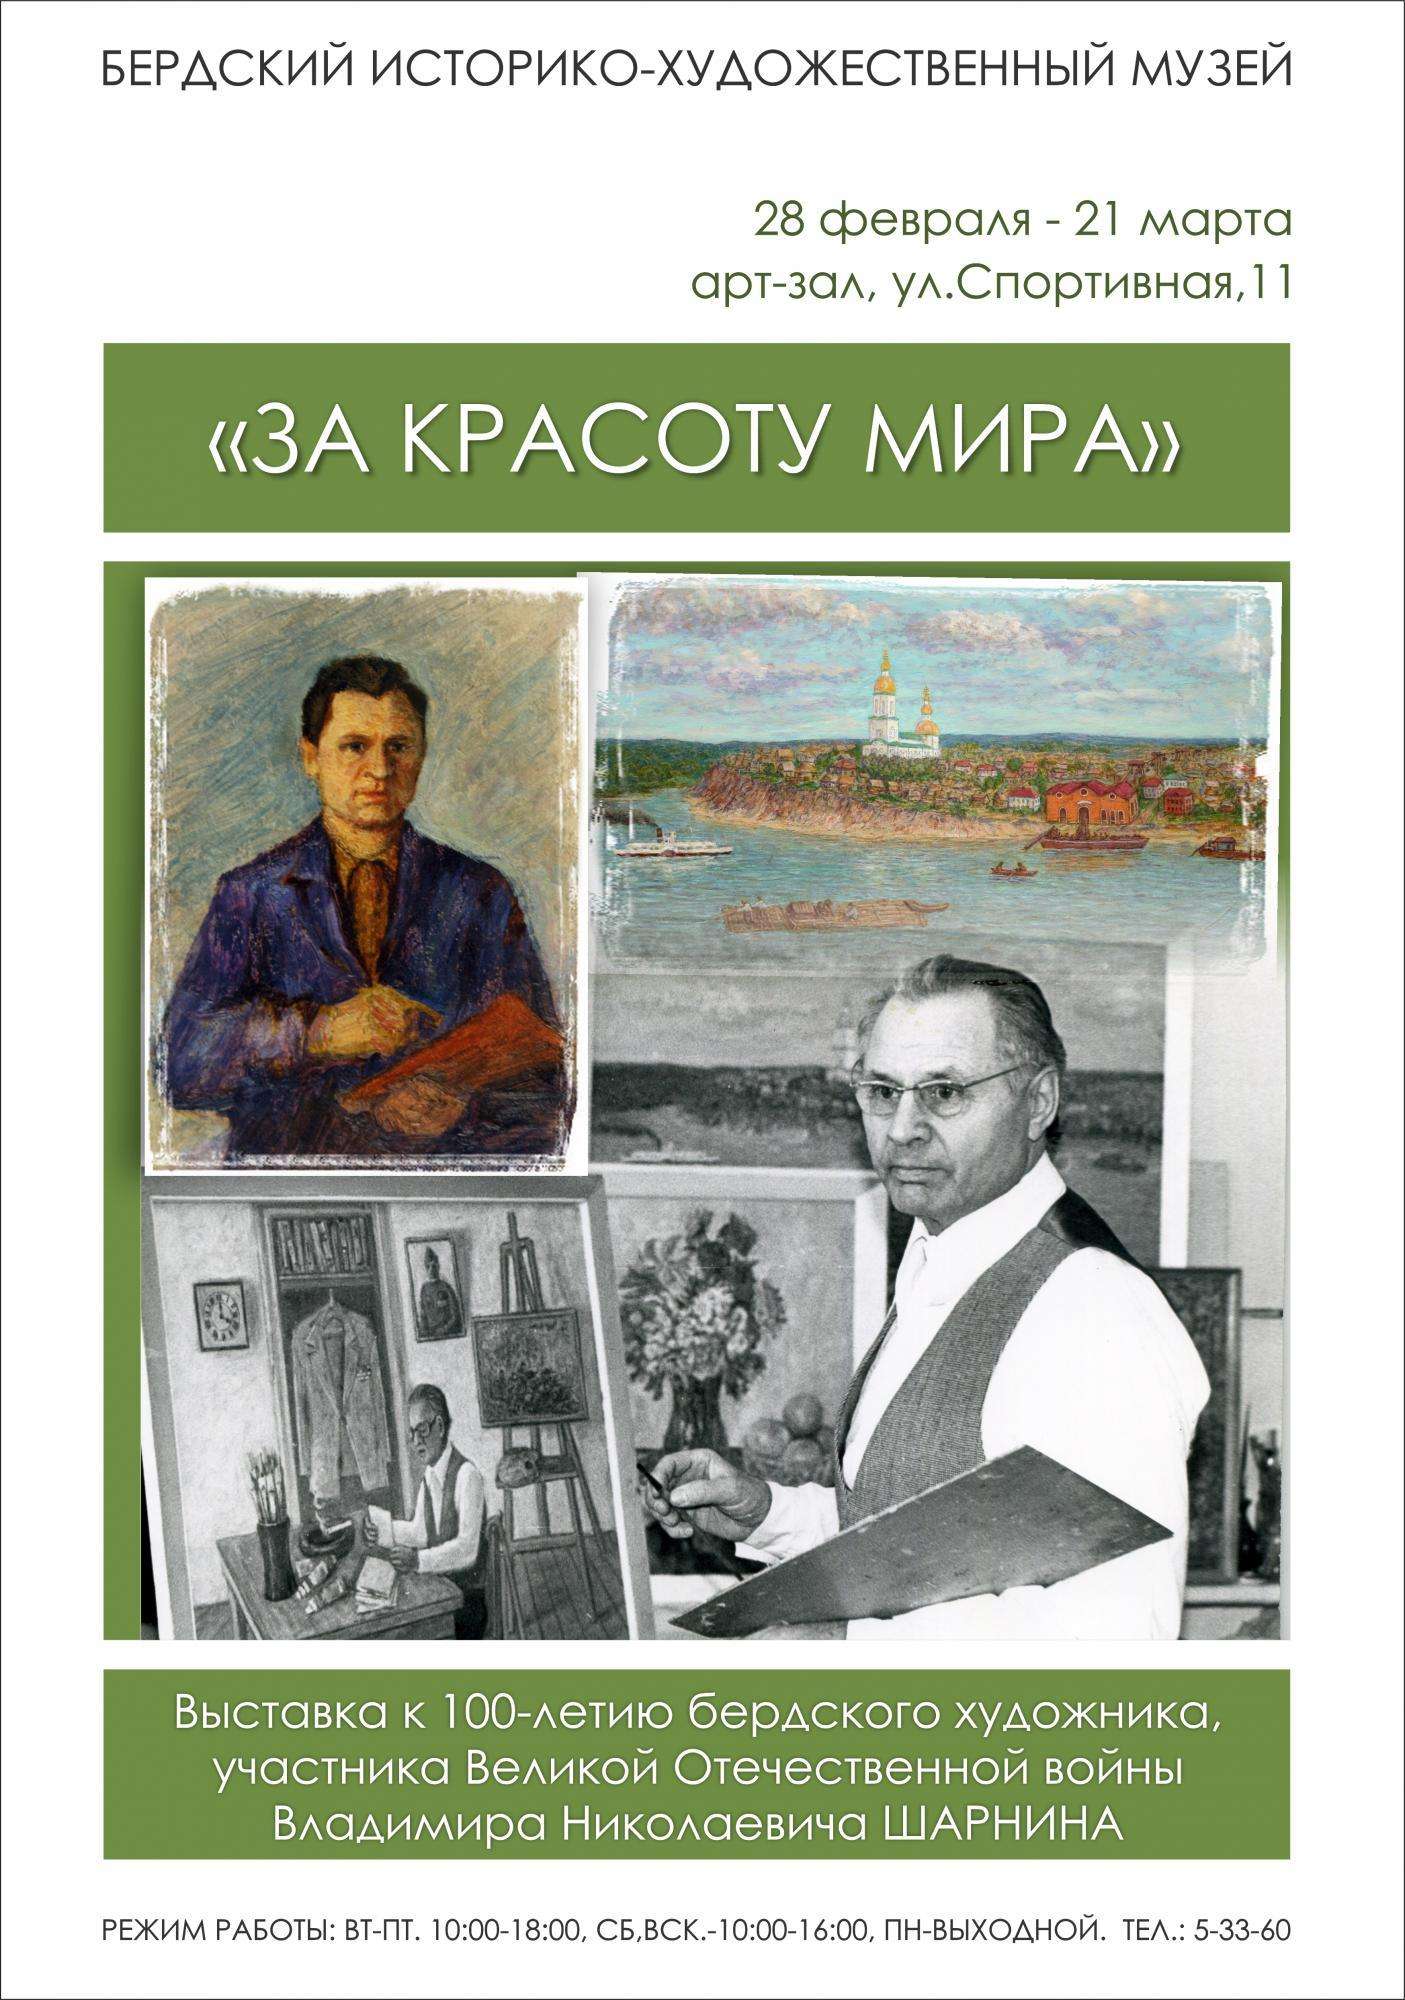 Выставка к 100-летию художника Владимира Шарнина открывается в музее Бердска